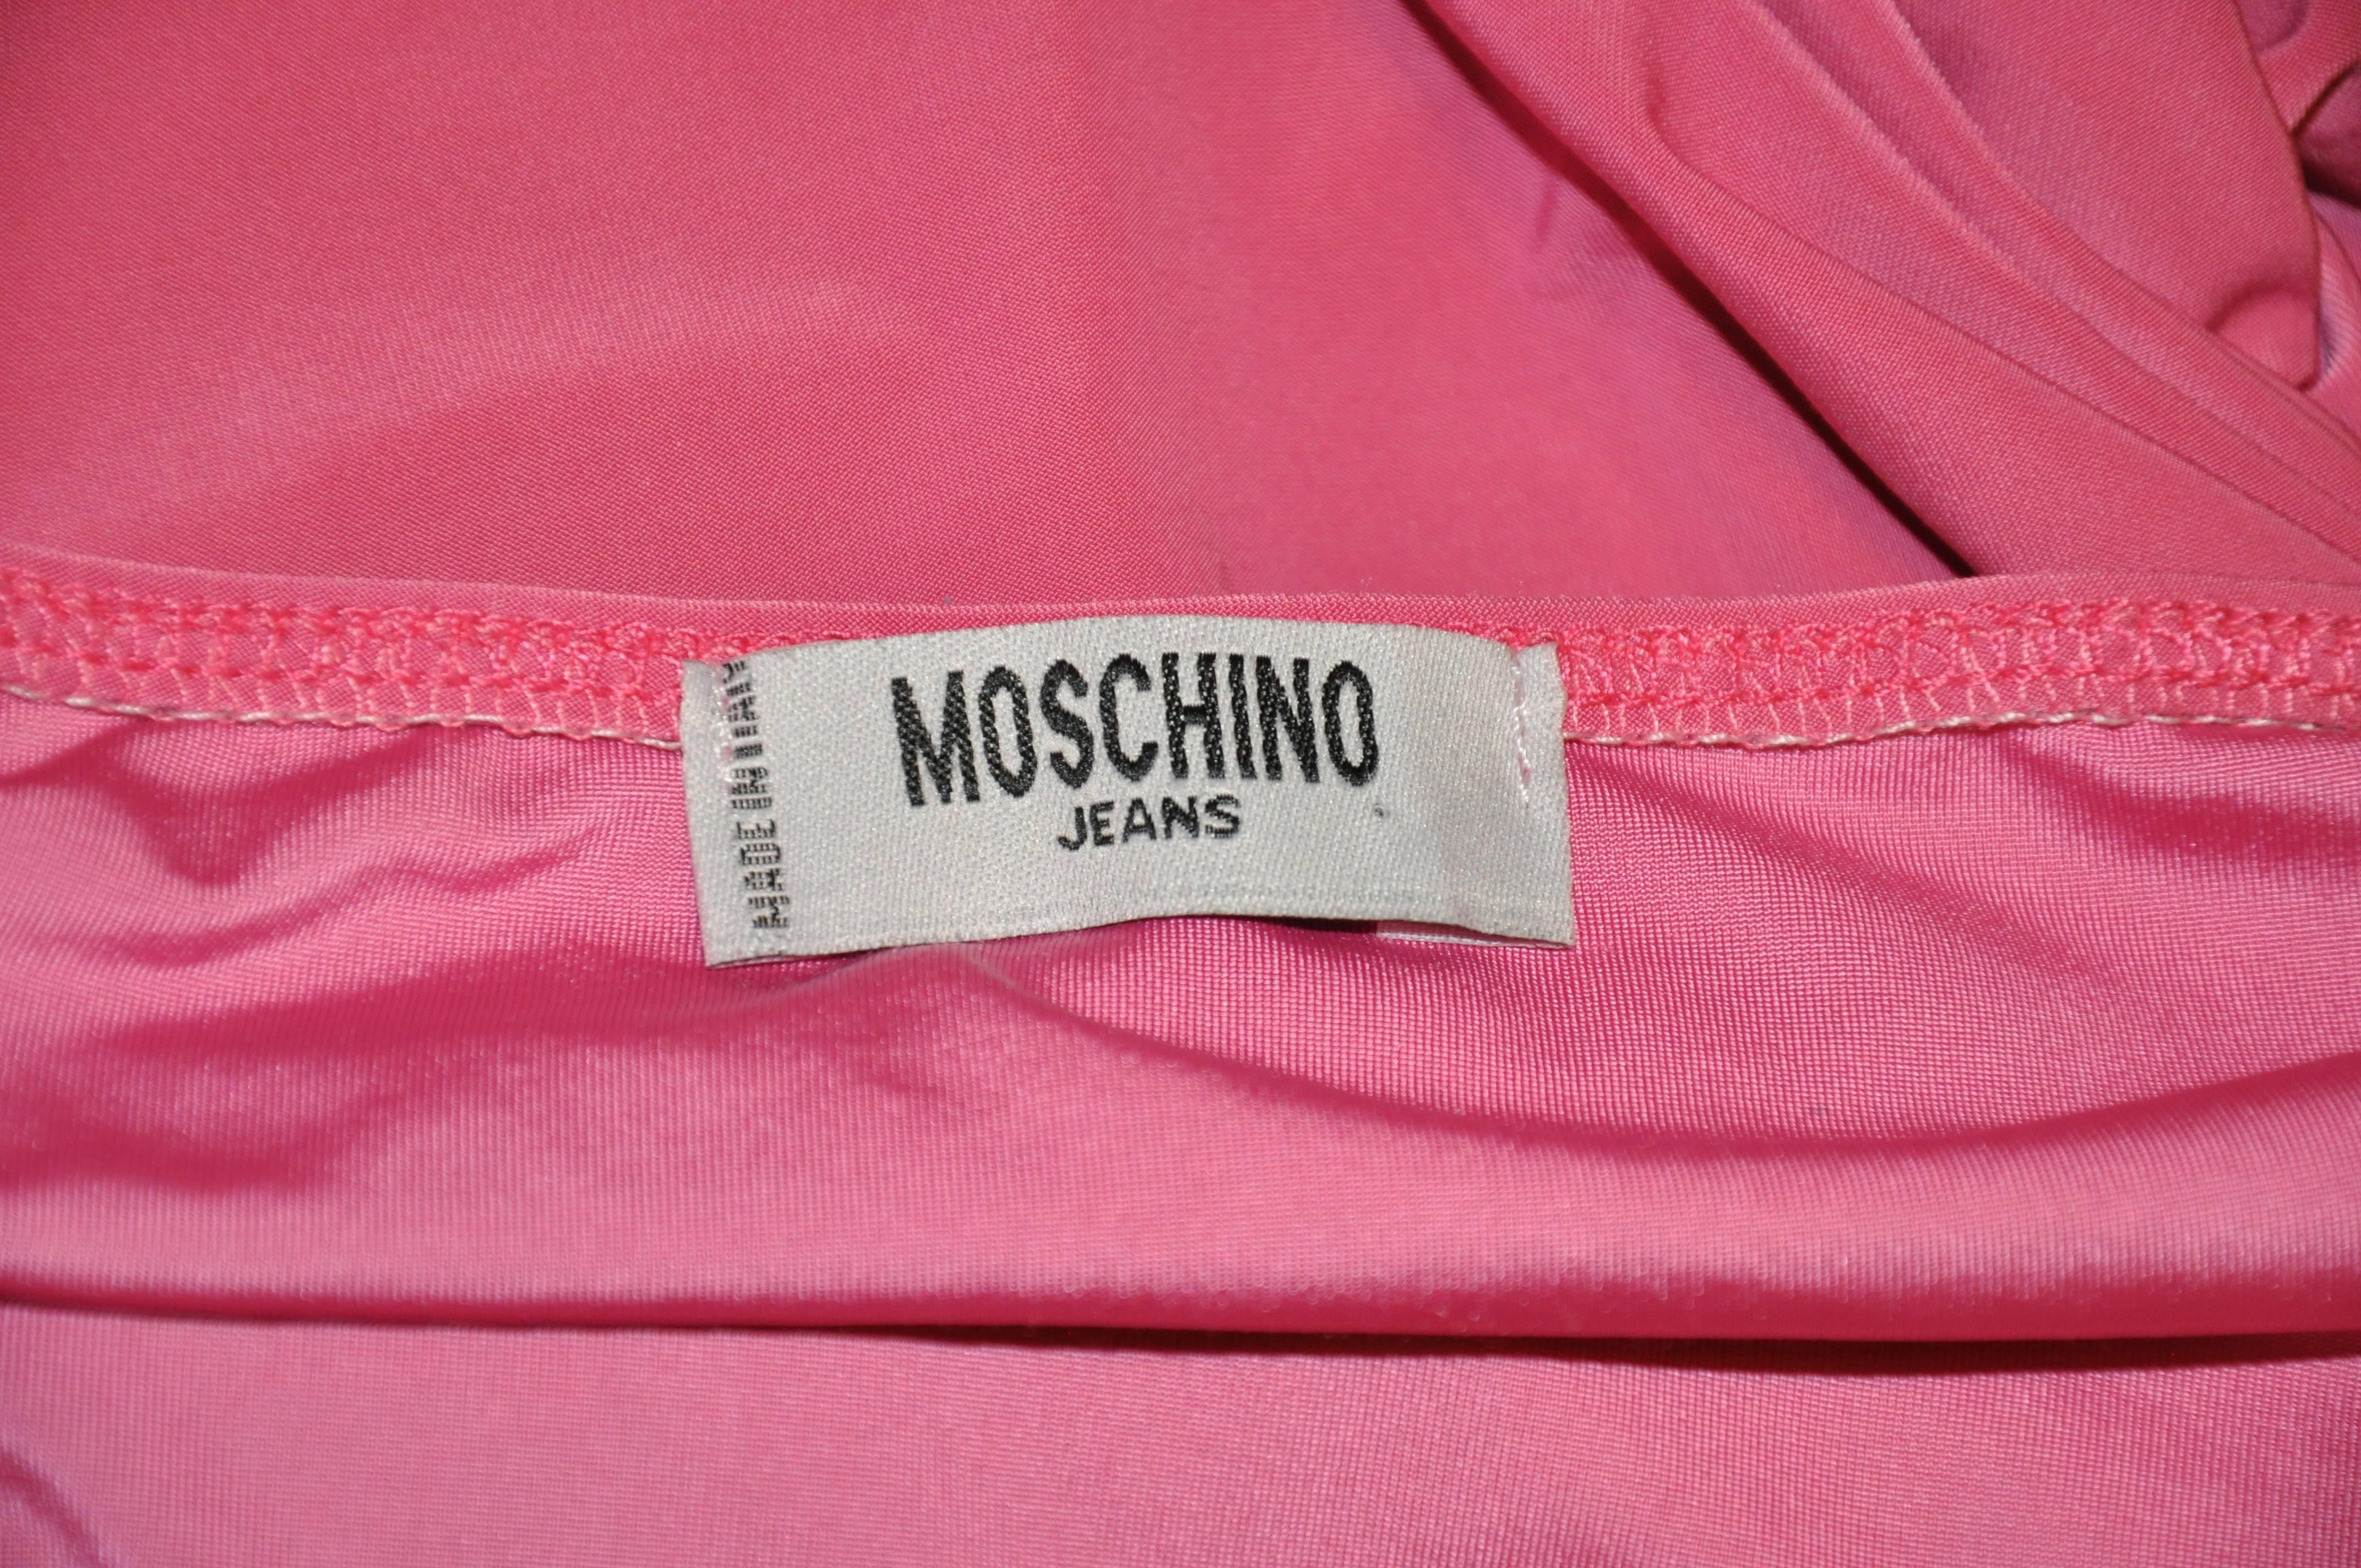        Das körpernahe Kleid von Moschino in zartem Fuchsia ist mit detaillierten Pailletten verziert. Sie besteht aus einer Mischung aus Elasthan, Acetat und Polyester und hat eine Länge von 23